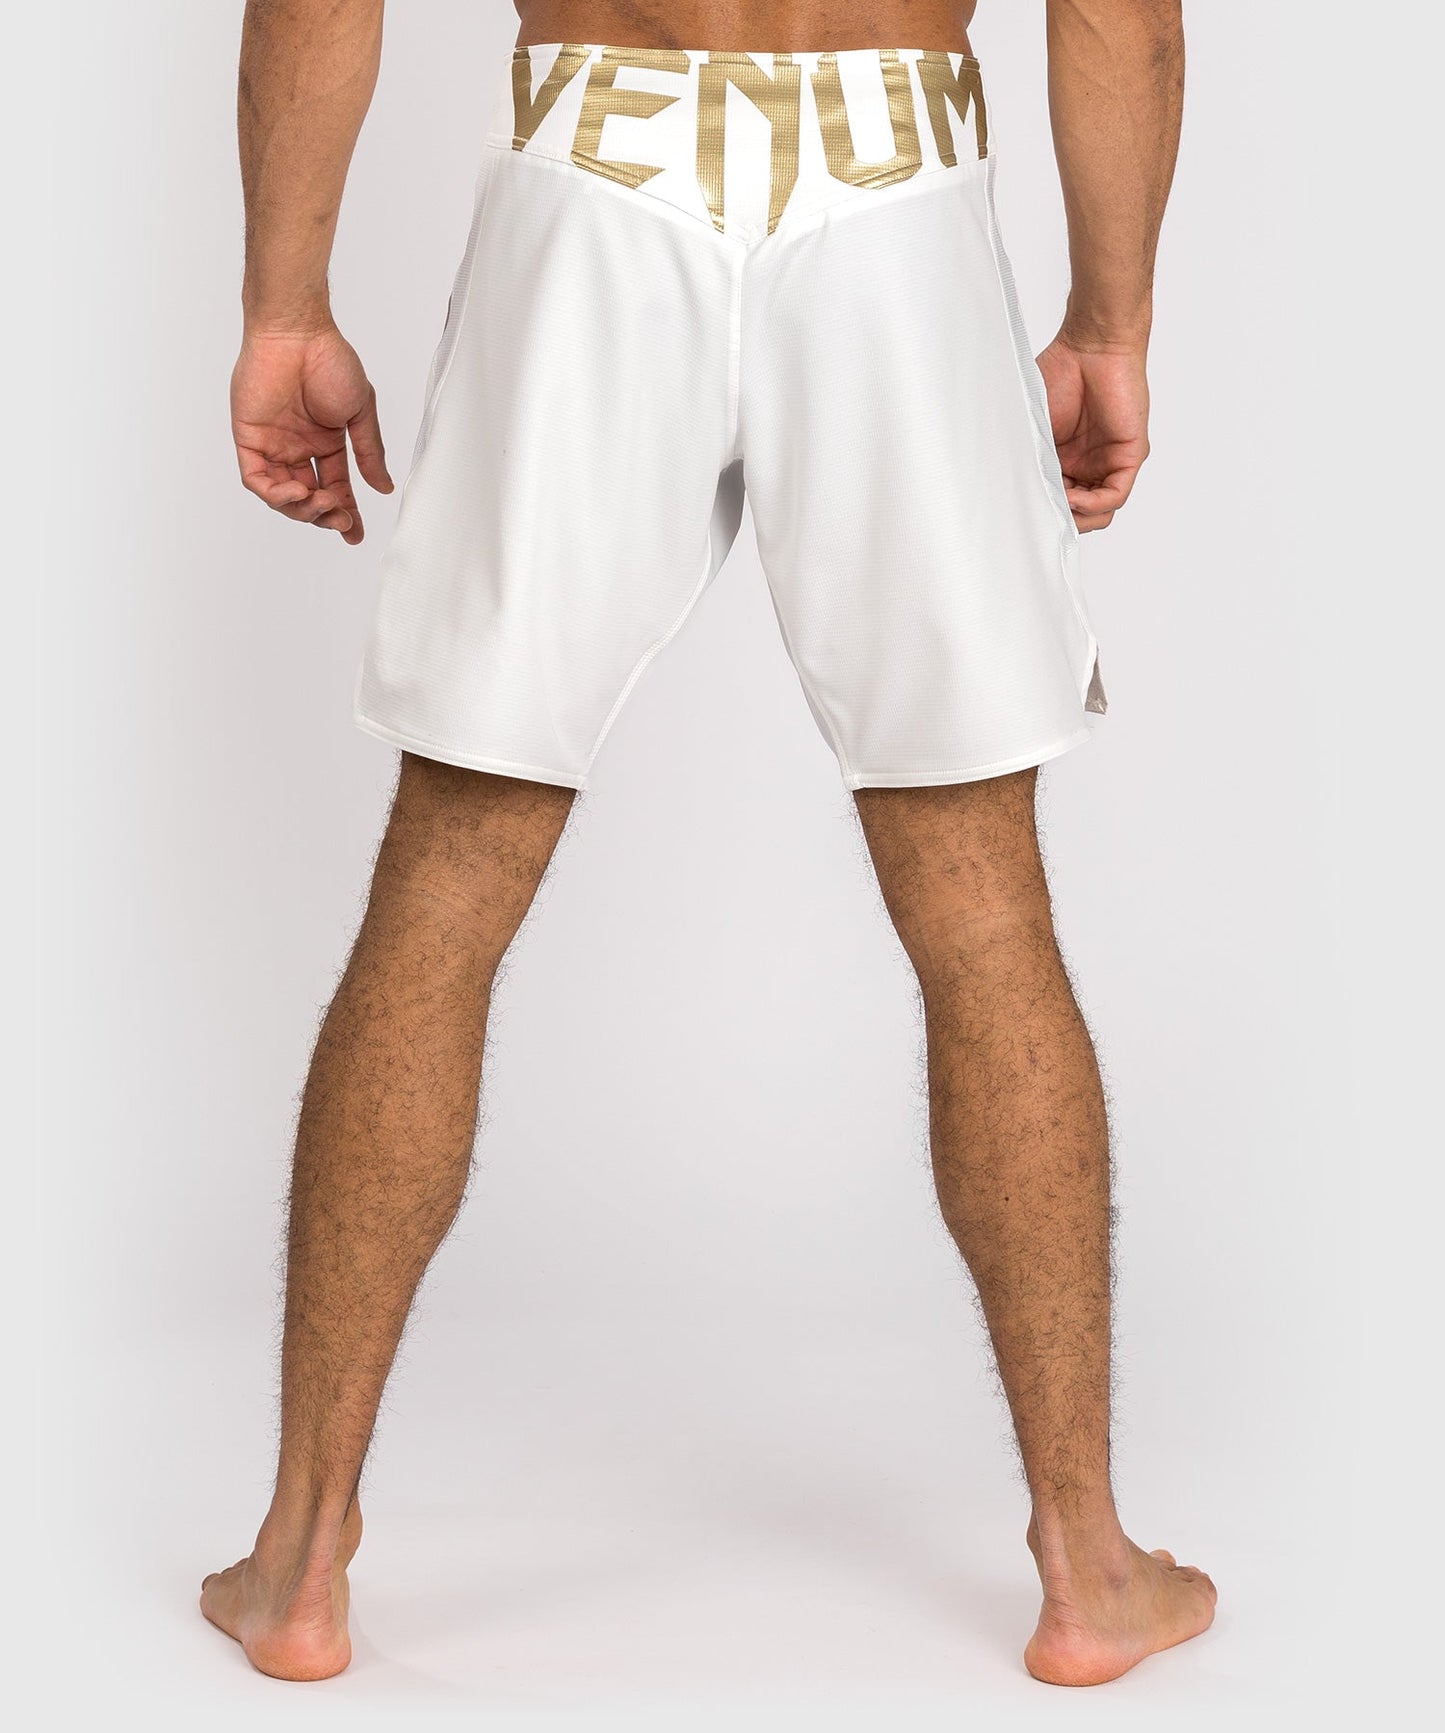 Venum Light 5.0 Pantaloncini da combattimento - Bianco/Oro